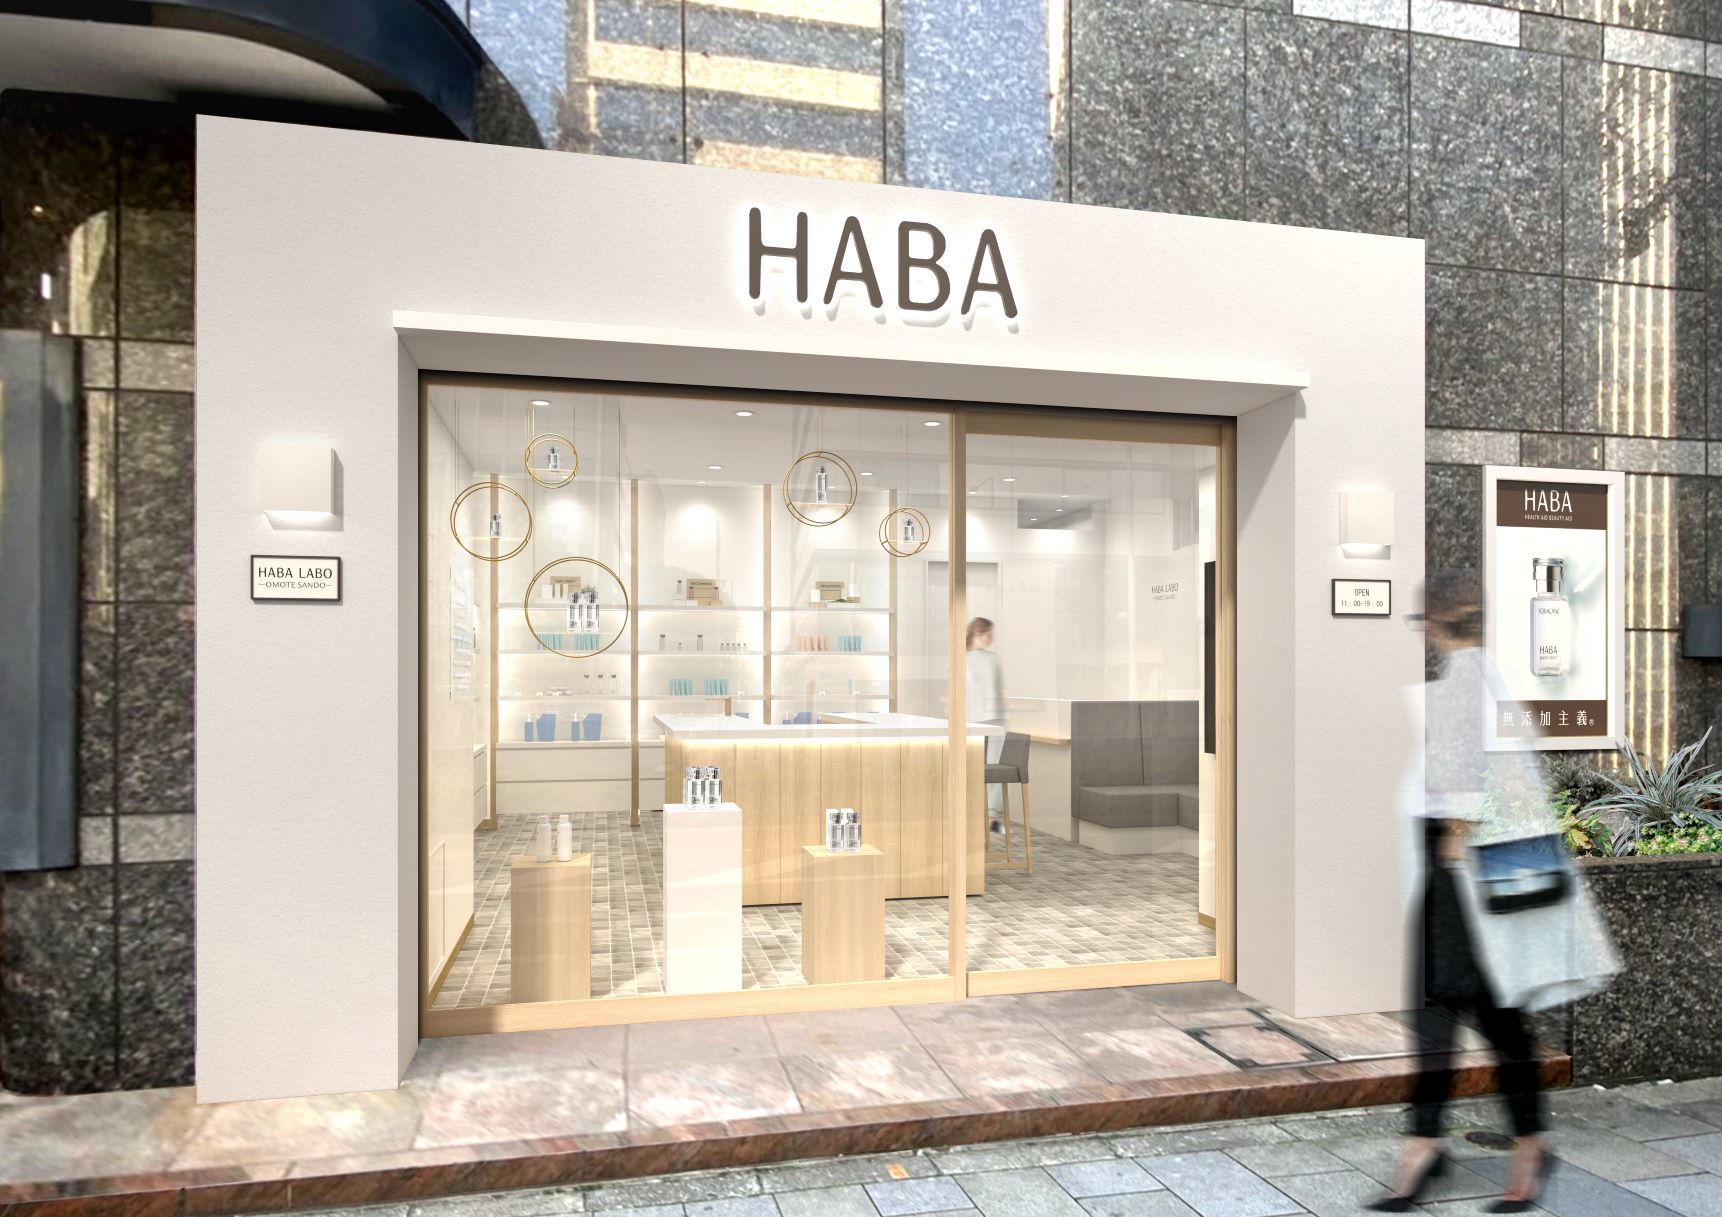 人や環境にやさしいハーバーの美と健康の情報発信地
『HABA LABO 表参道』
2022年4月24日（日）北青山3丁目にグランドオープン